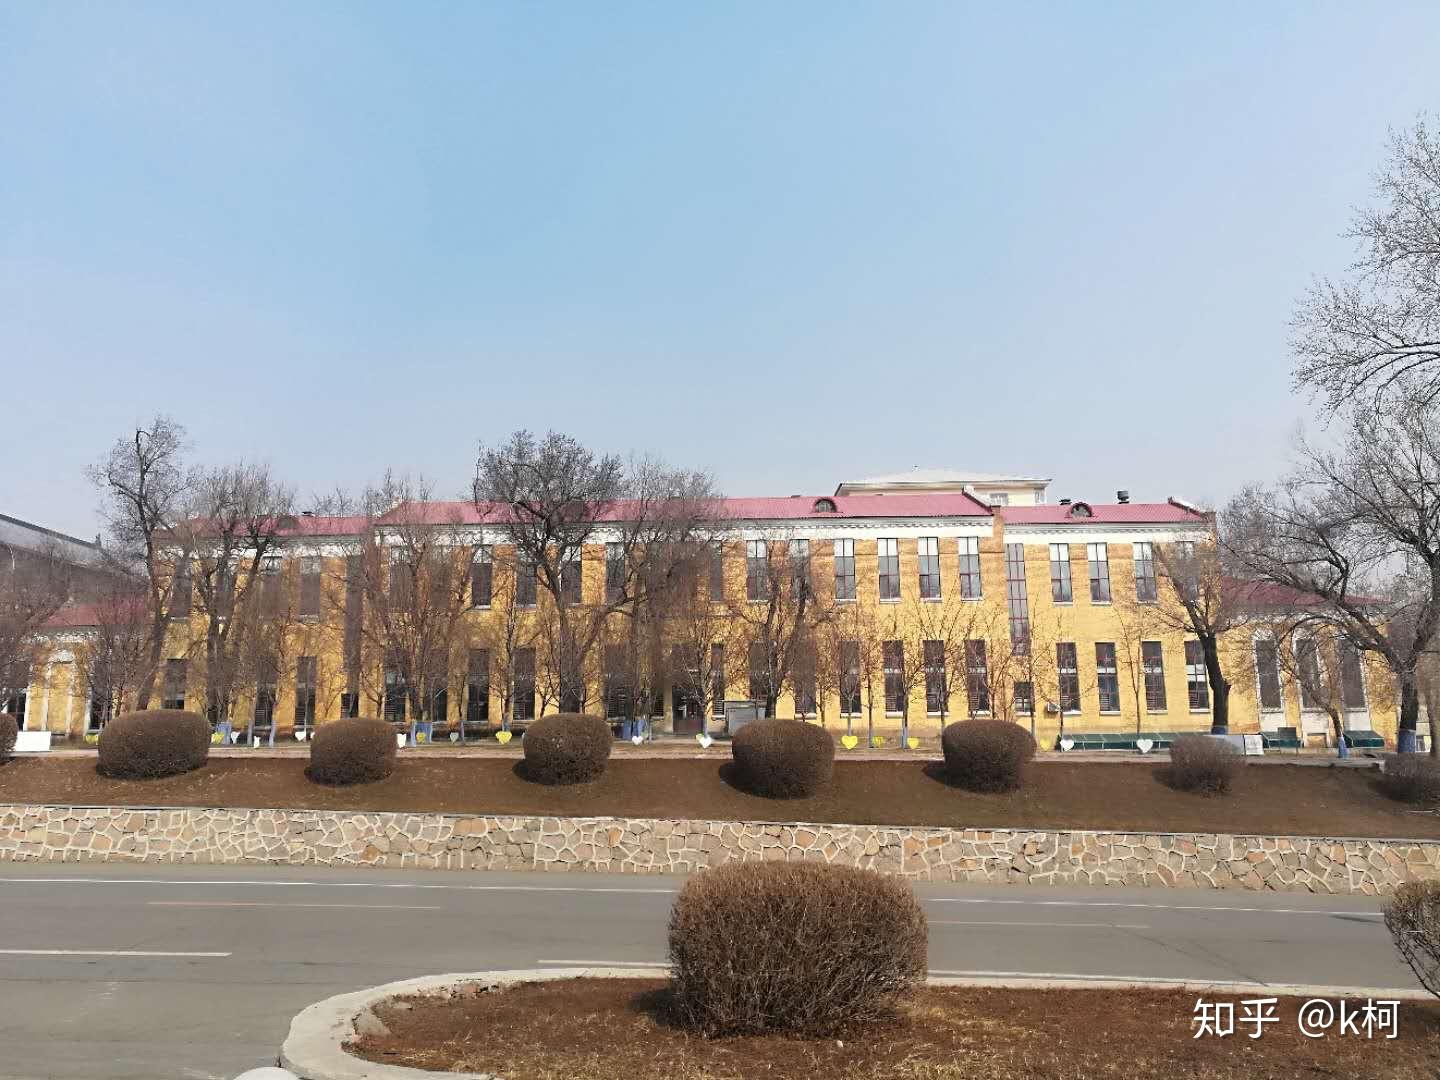 以古建筑屋顶为切入点看懂哈尔滨工程大学（HEU）建筑群 - 知乎